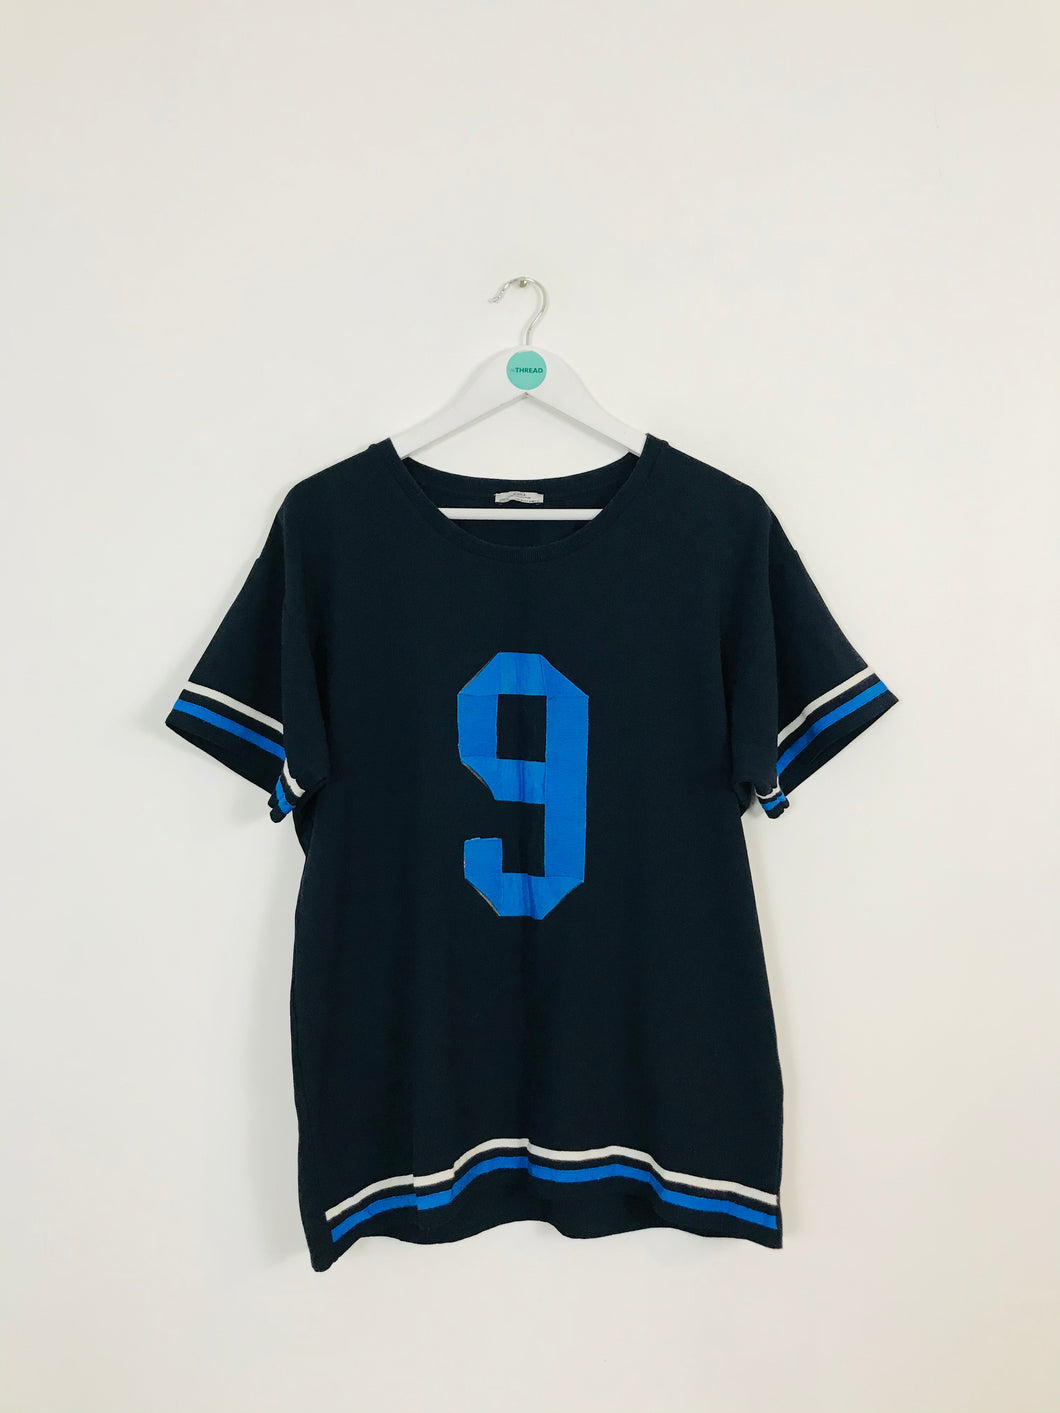 Zara Women’s Oversized Graphic T-Shirt | M UK12 | Blue